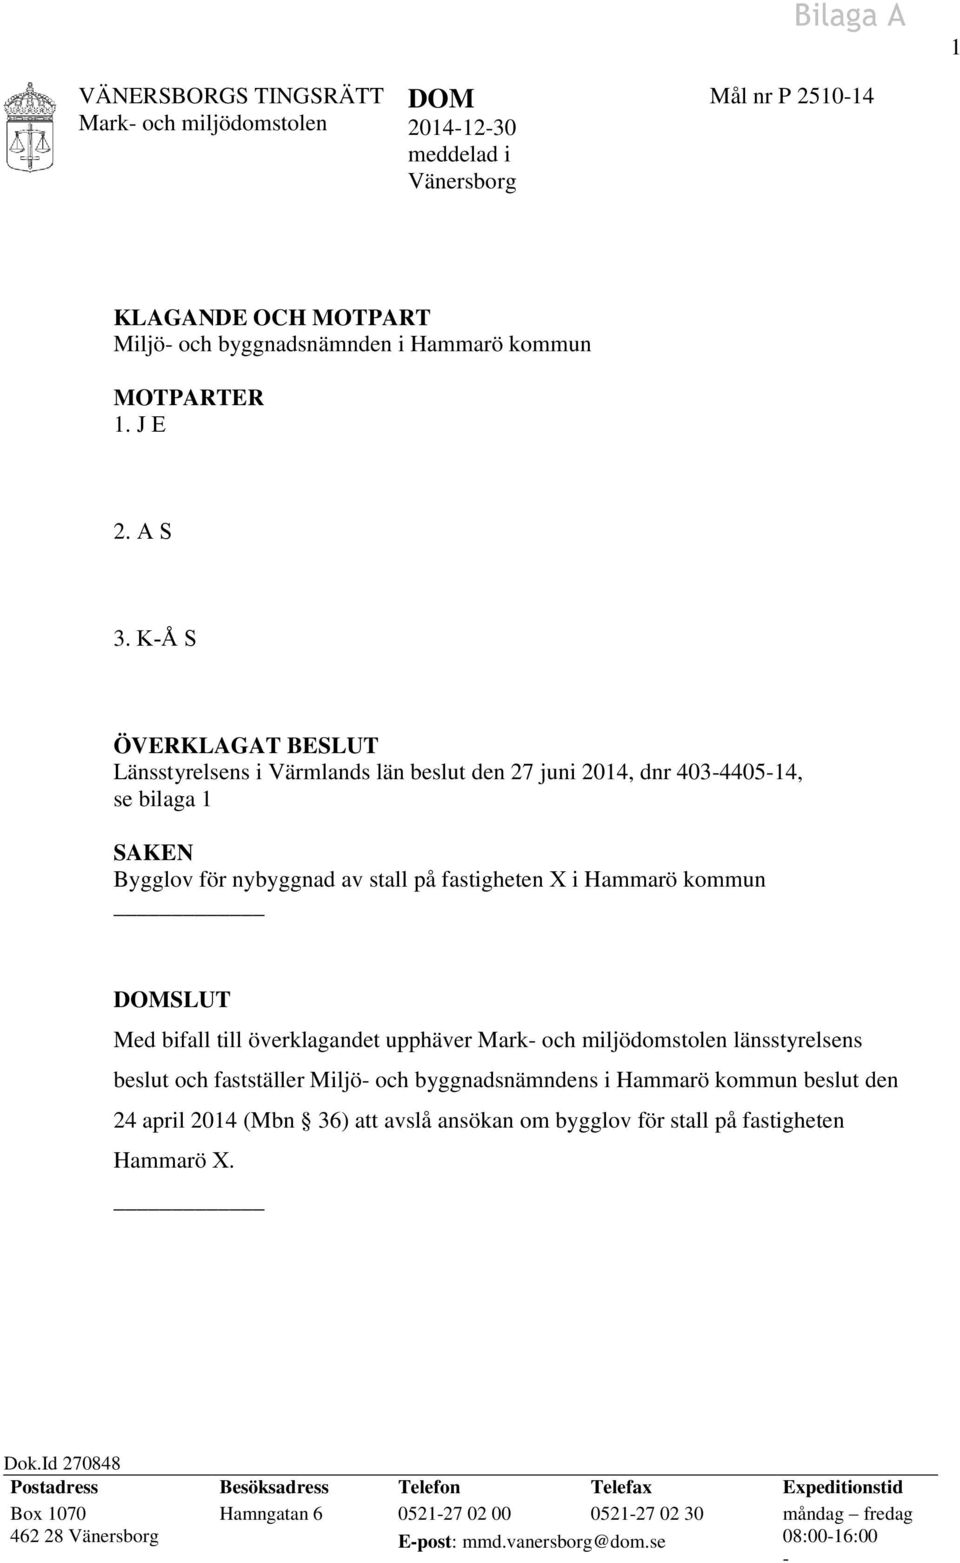 bifall till överklagandet upphäver länsstyrelsens beslut och fastställer Miljö- och byggnadsnämndens i Hammarö kommun beslut den 24 april 2014 (Mbn 36) att avslå ansökan om bygglov för stall på